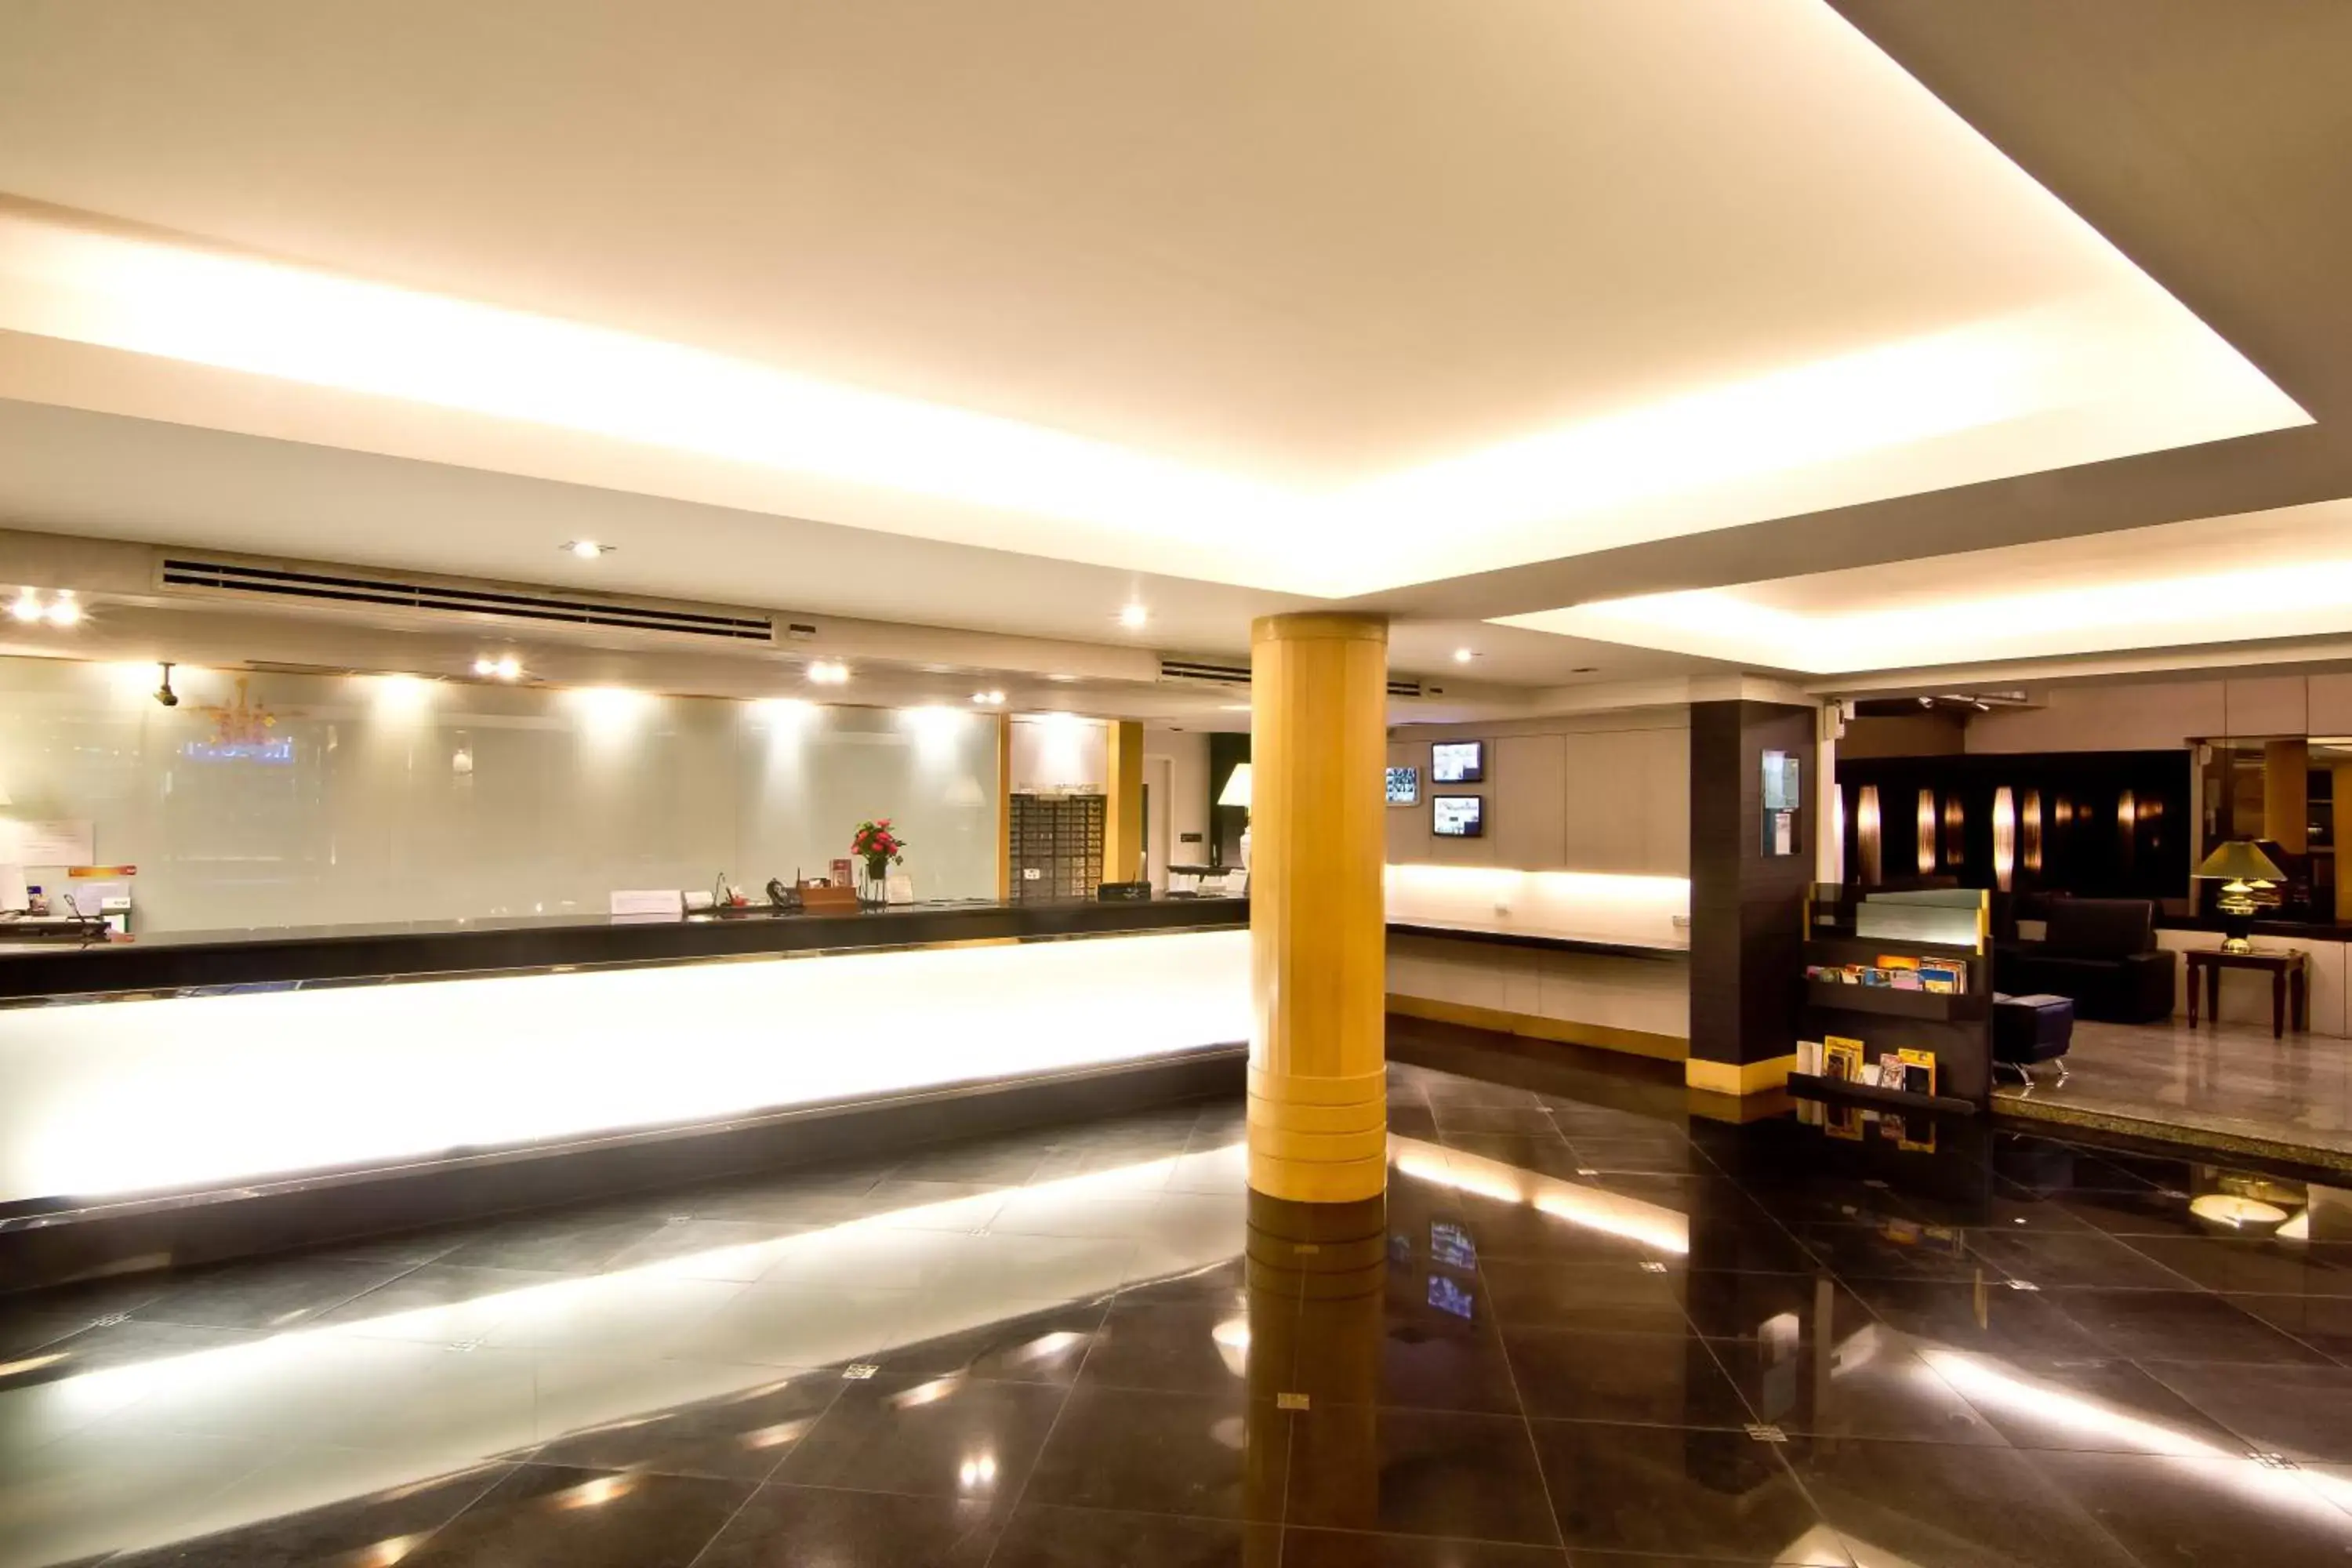 Lobby or reception, Lobby/Reception in Fortuna Hotel